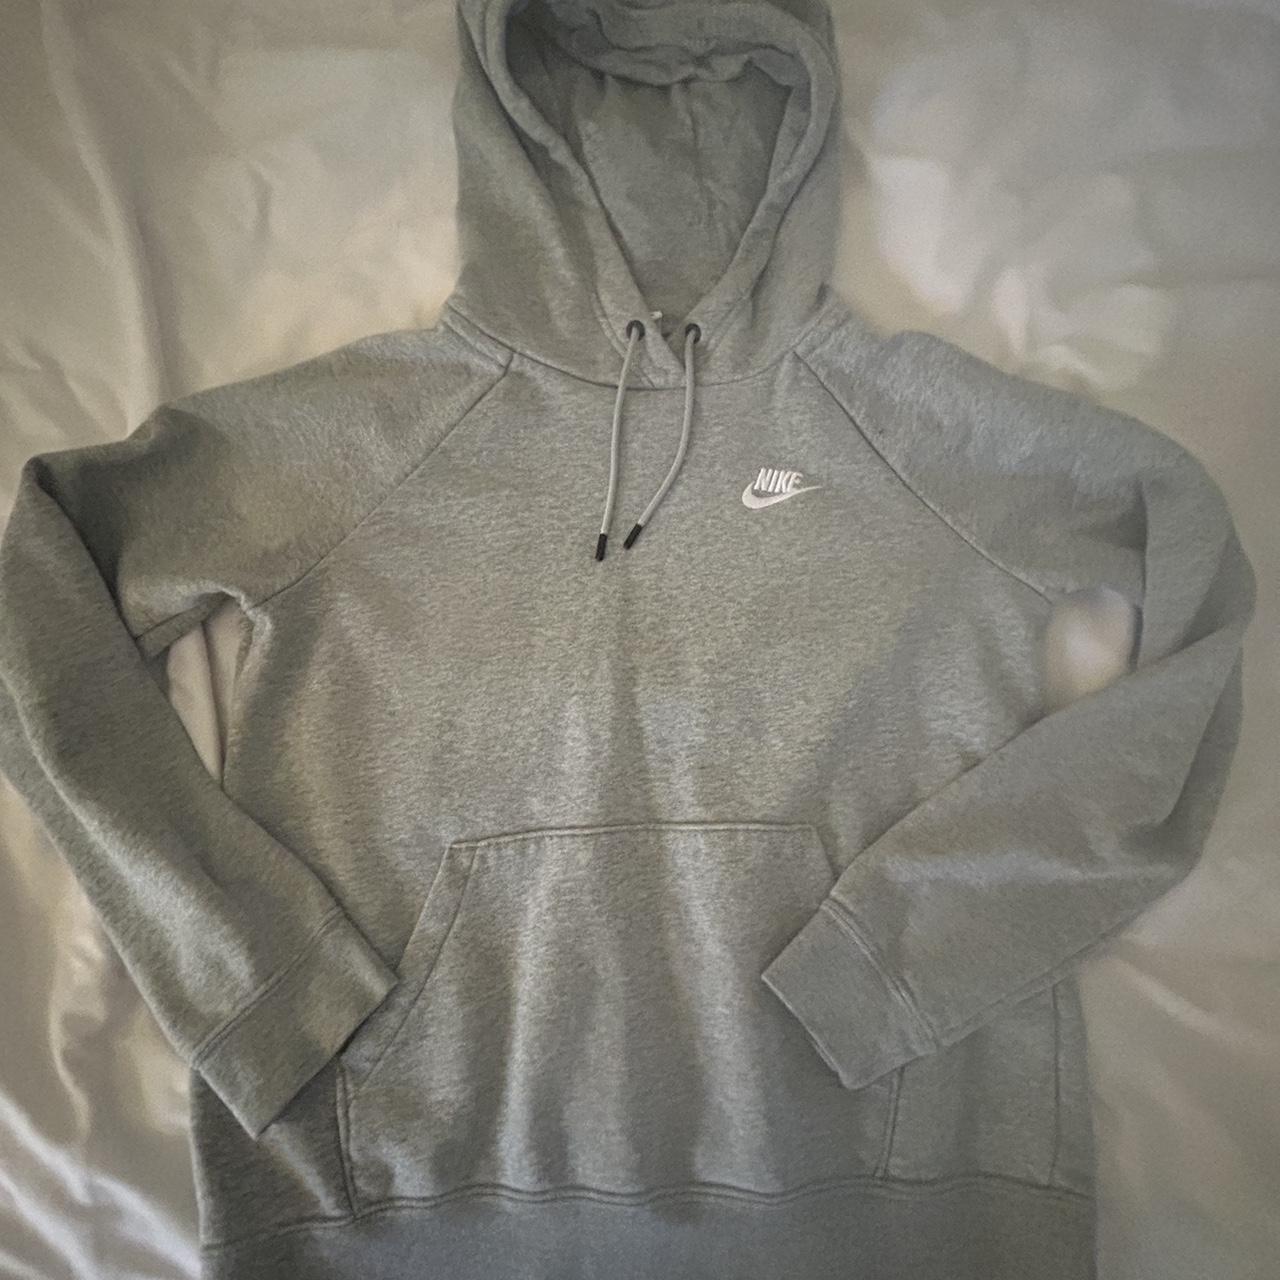 Nike grey hoodie #nike #hoodie #sweatshirt #sportswear - Depop